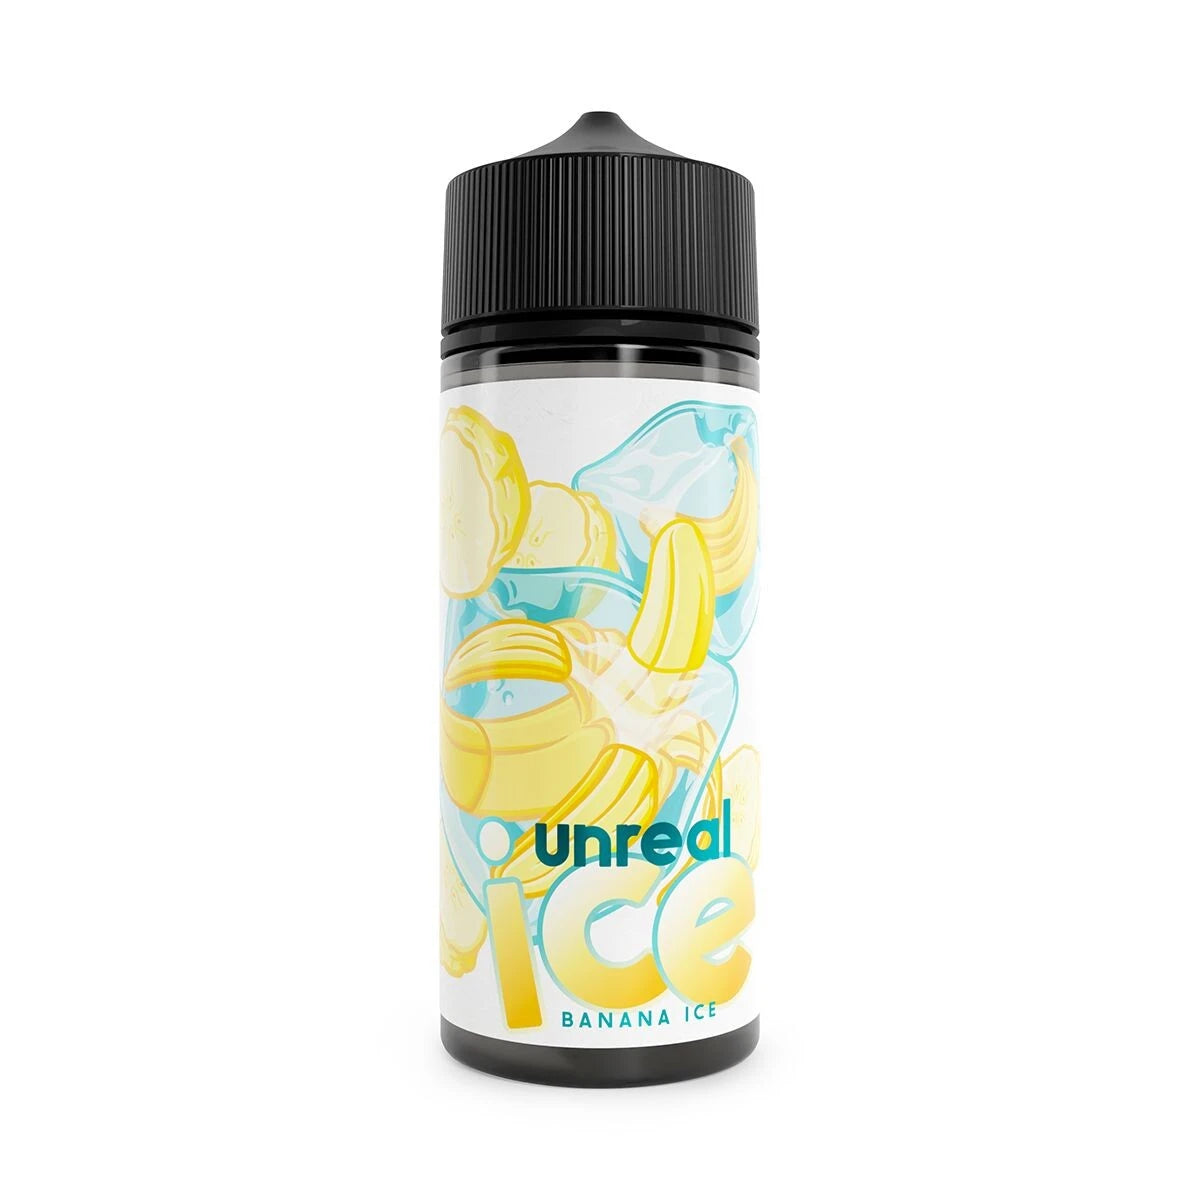 Banana Ice Shortfill by Unreal Ice. - 100ml